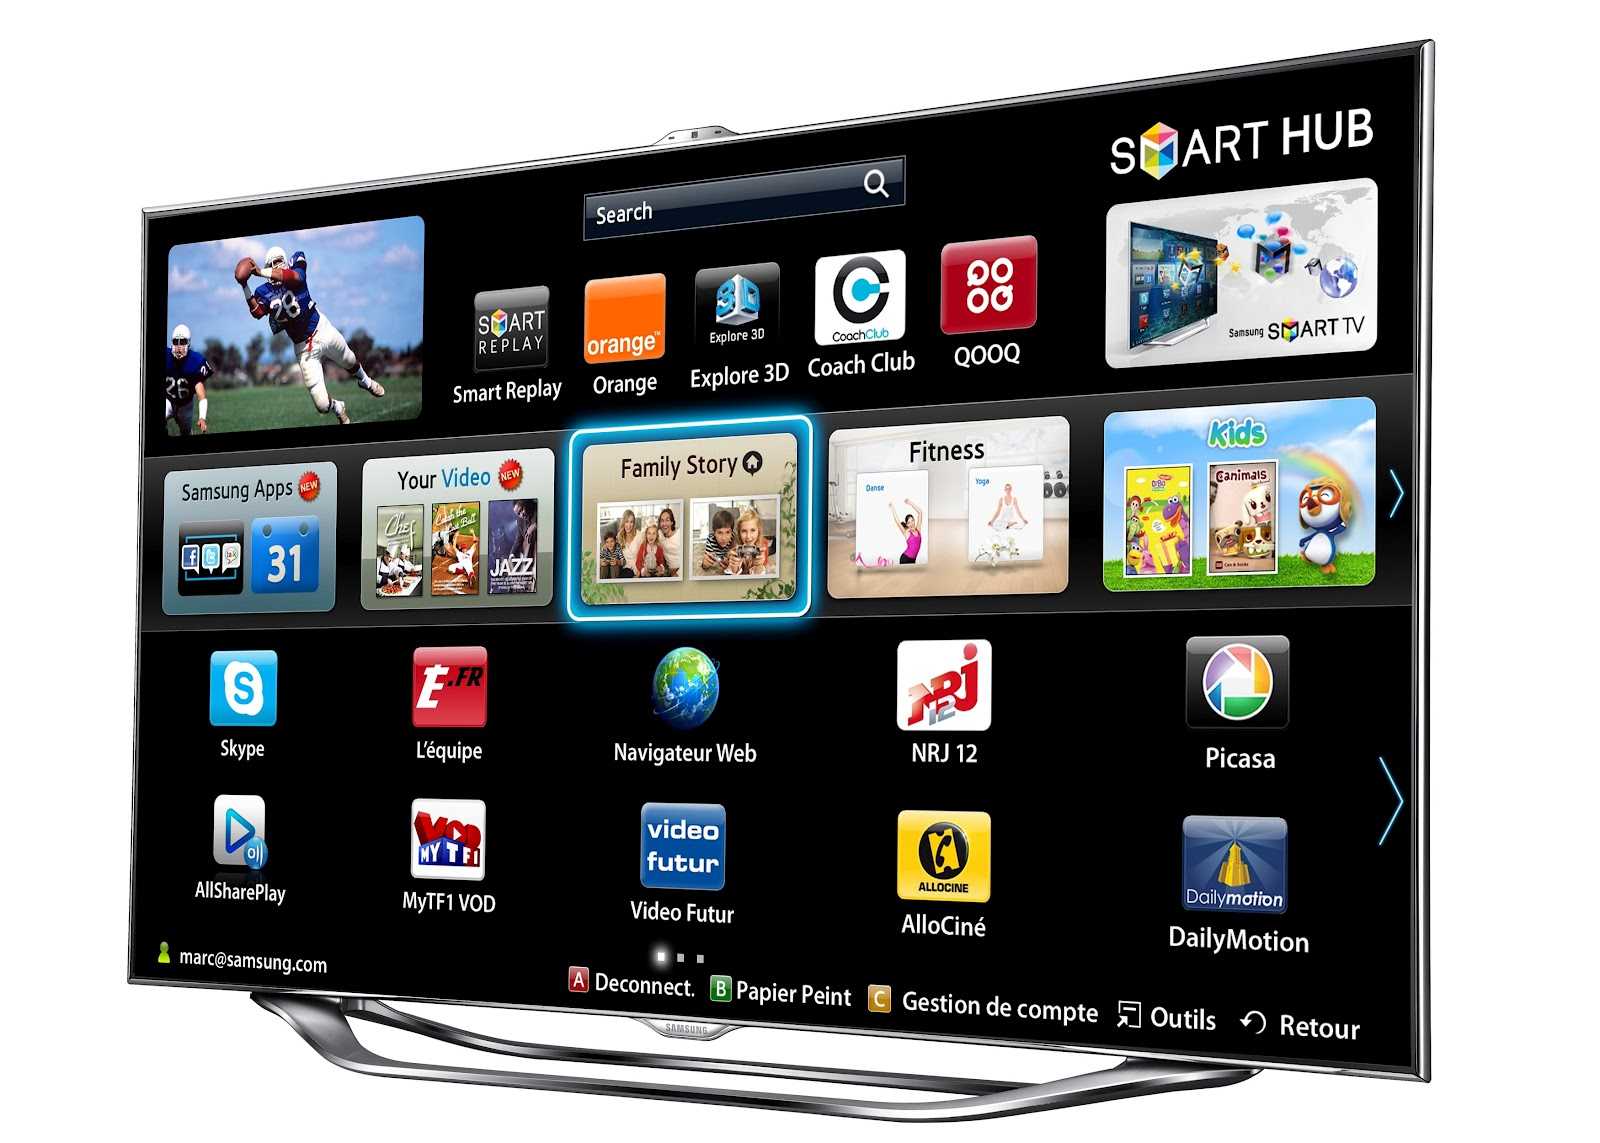 Samsung Smart TV. Смарт хаб смарт ТВ самсунг. Samsung Smart TV ue46es8000. Телевизор самсунг смарт ТВ 42. Смарт самсунг бесплатные каналы